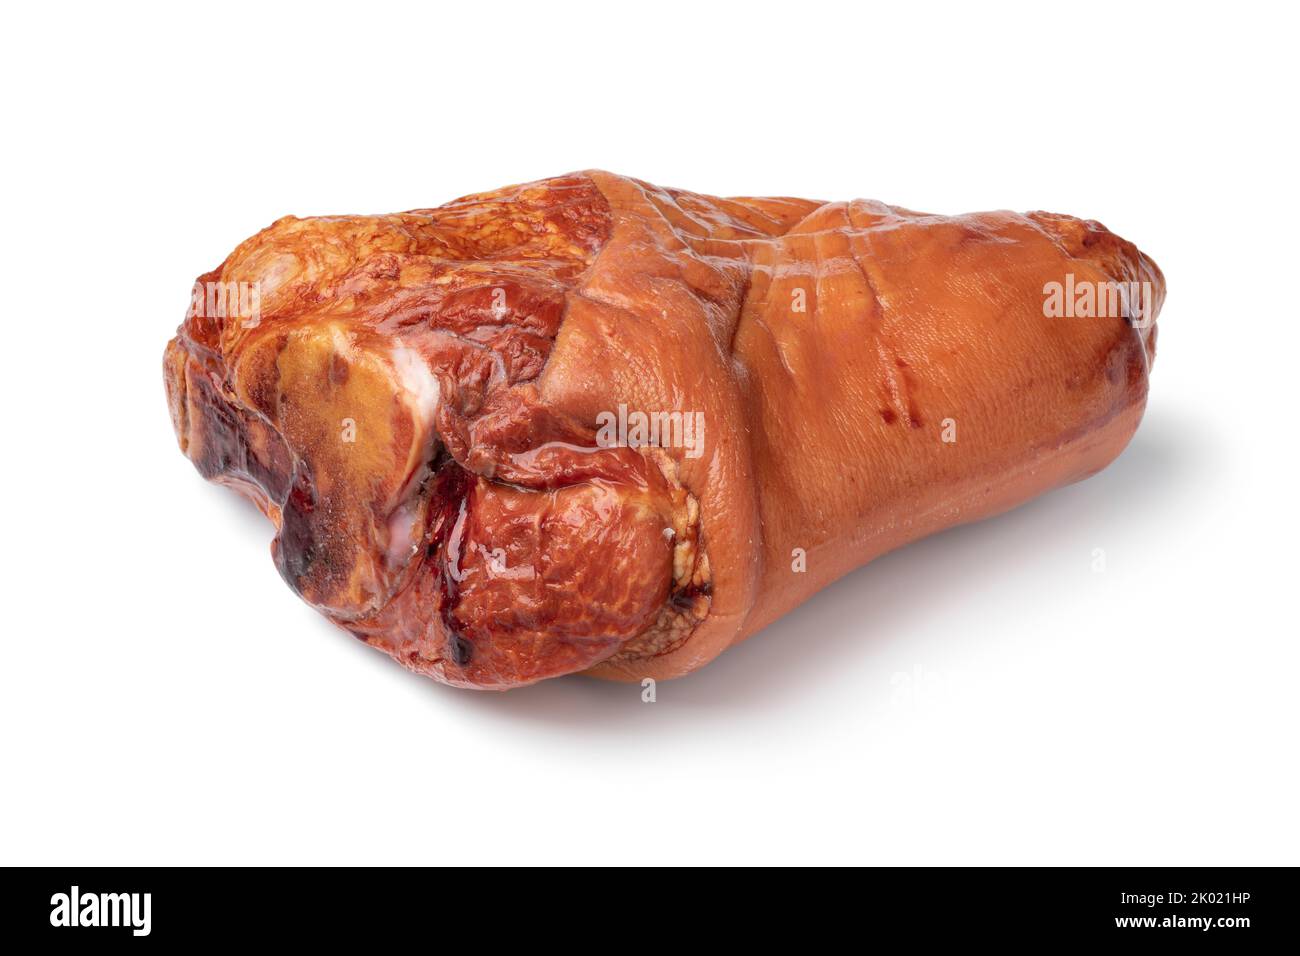 Tradizionale croato di maiale affumicato primo piano isolato su sfondo bianco Foto Stock